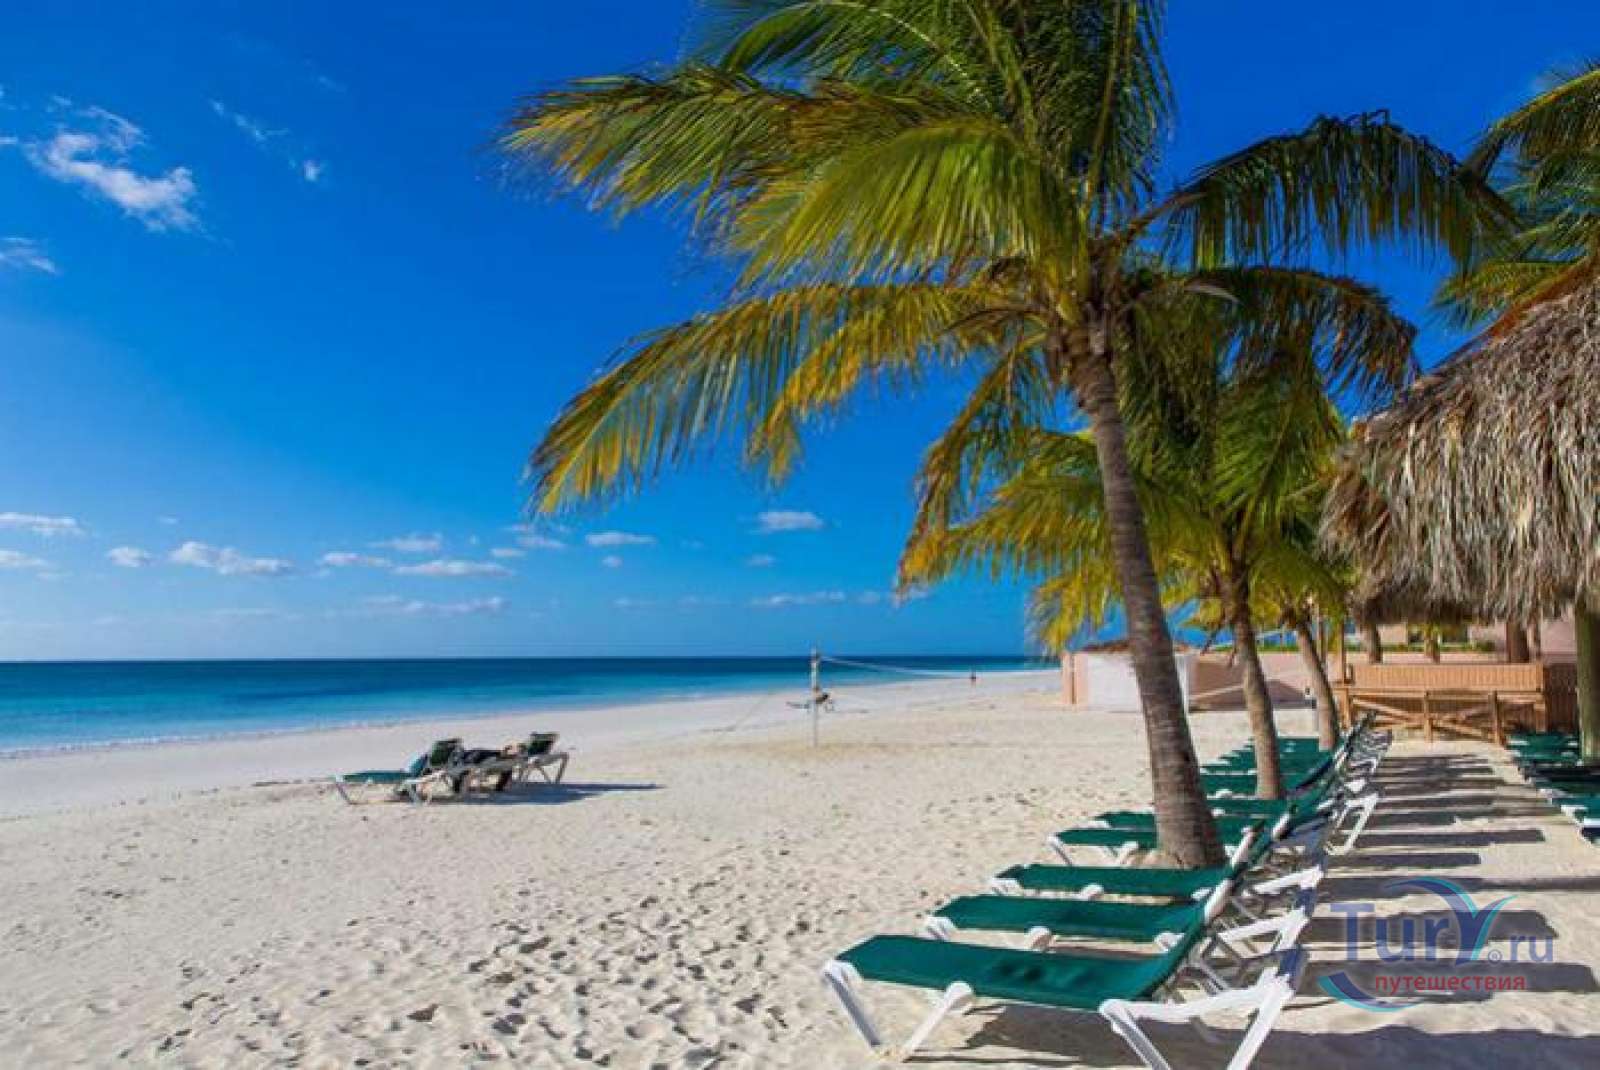 Island beach 2. "Багамские острова". Нассау (Багамские острова). Багамские острова пляж. Багамы пальмы море Нассау.